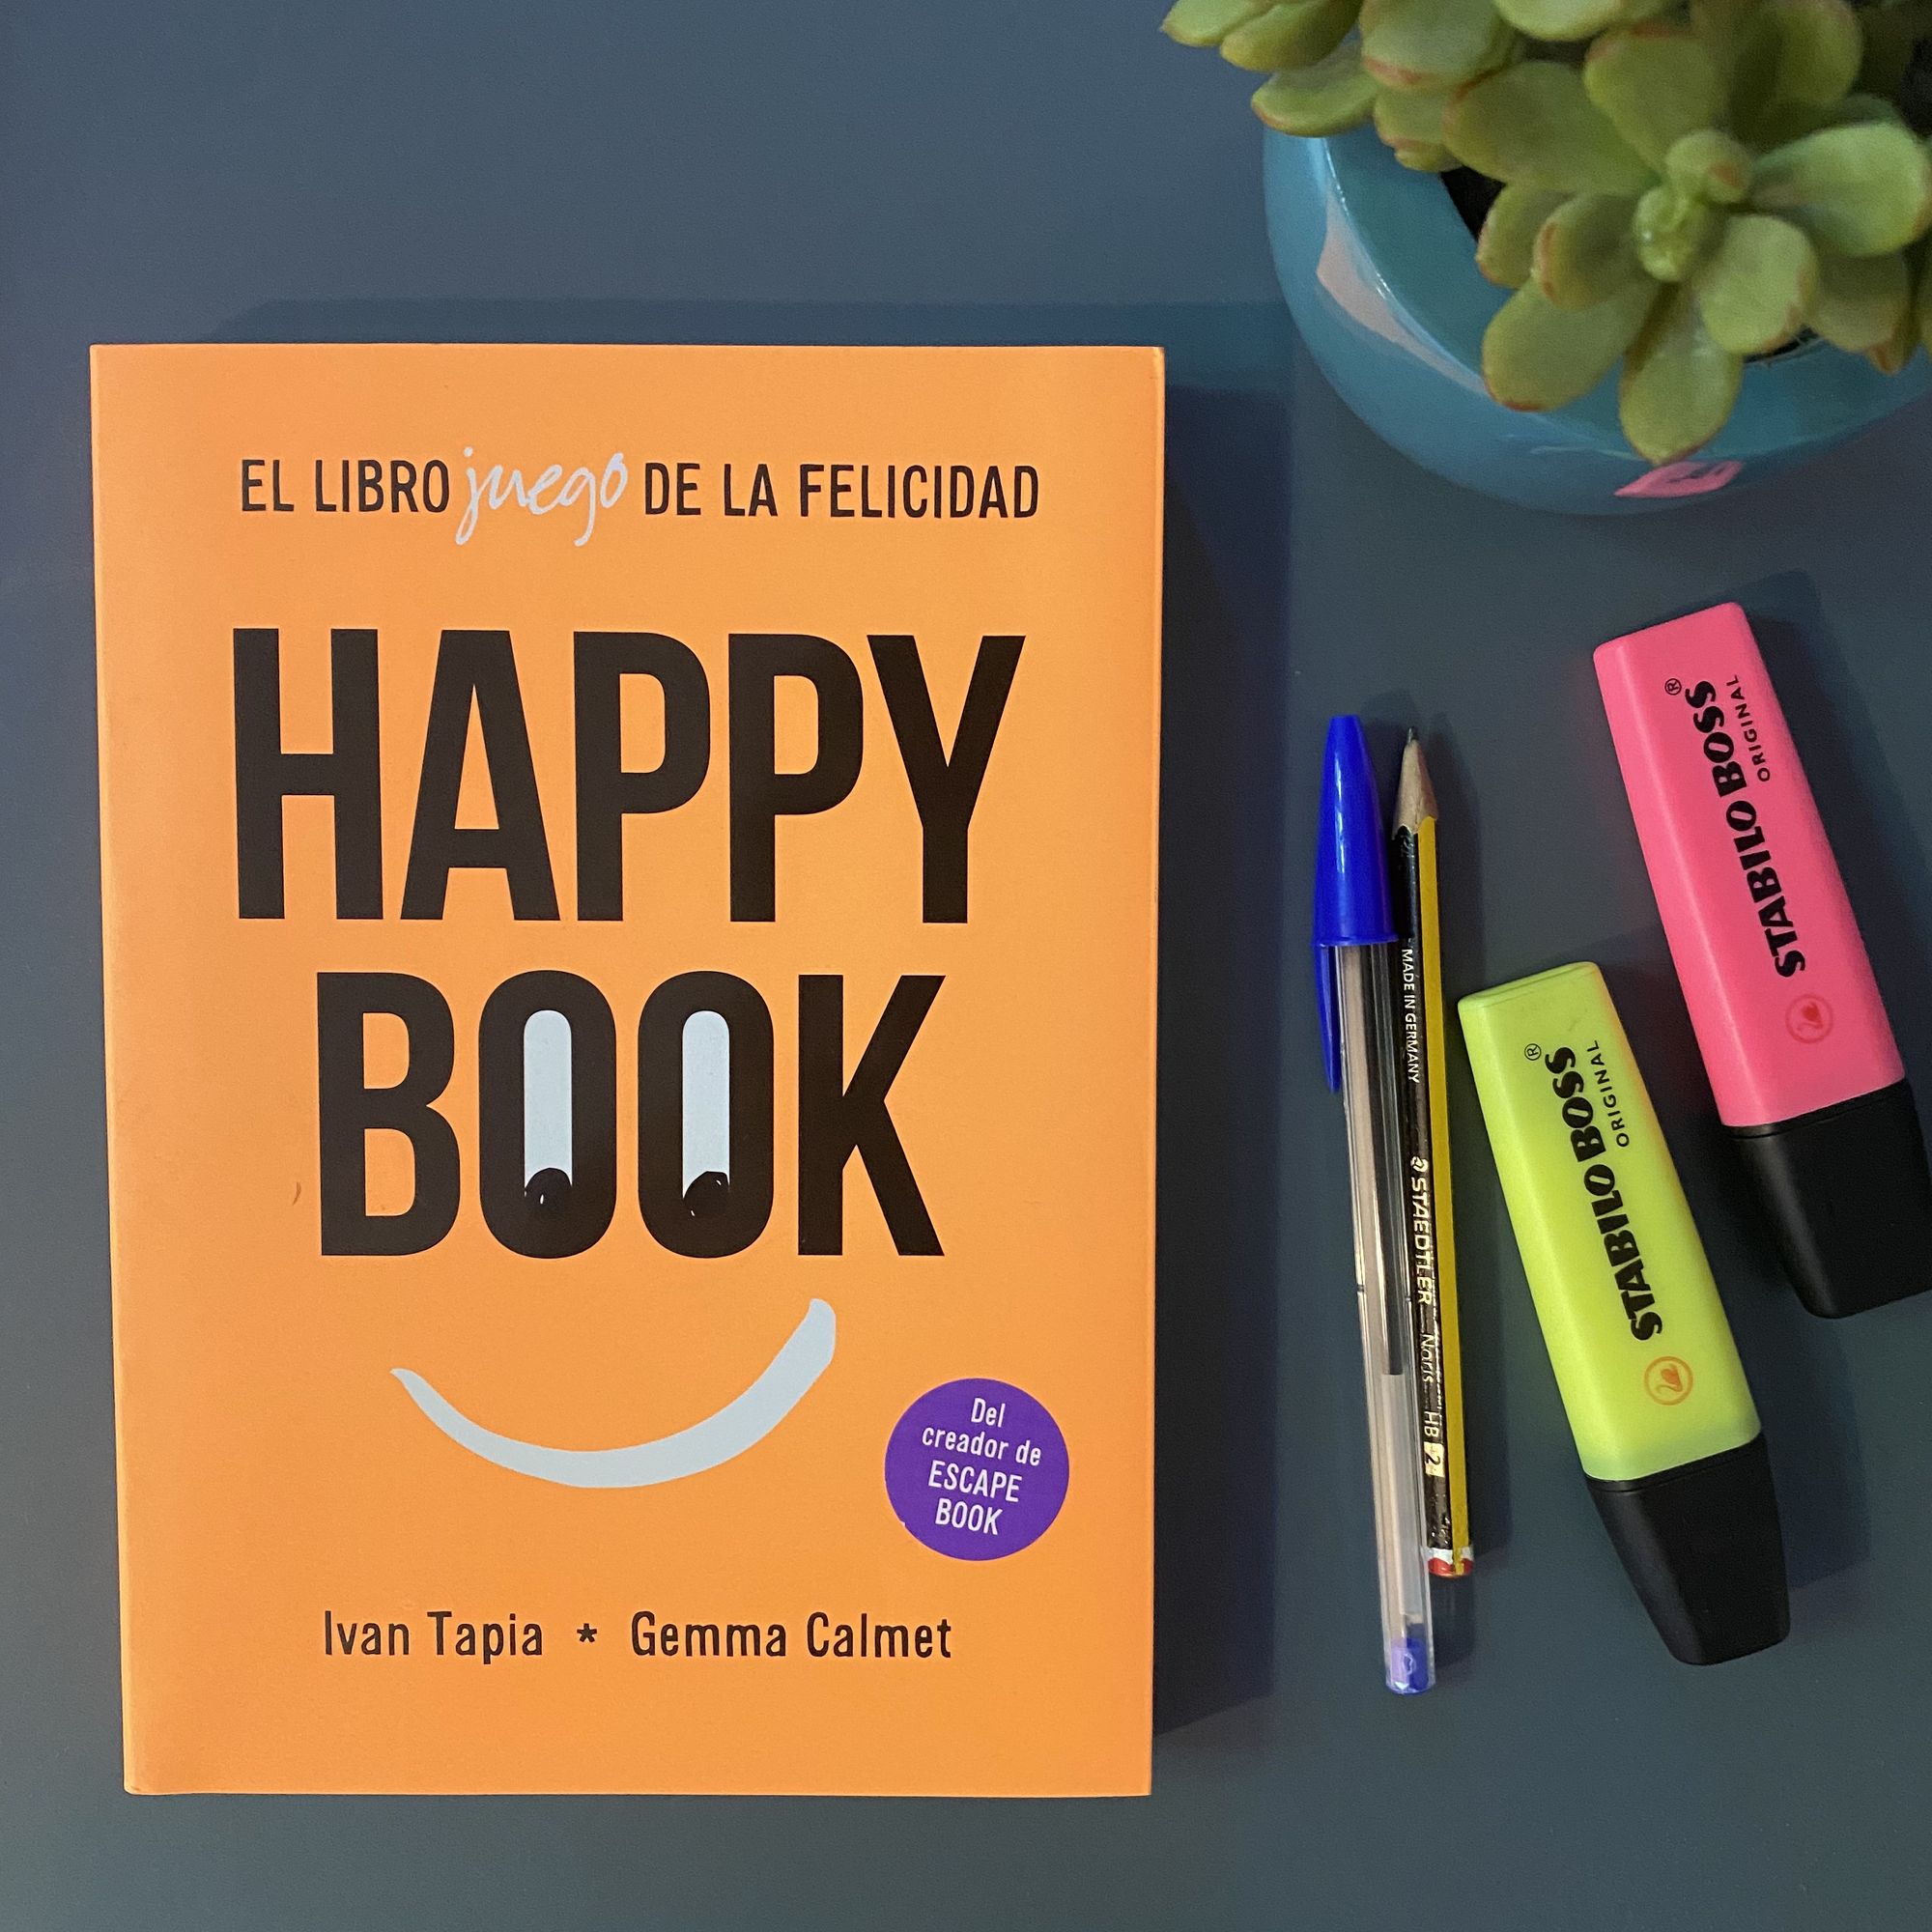 La història darrere de HappyBook